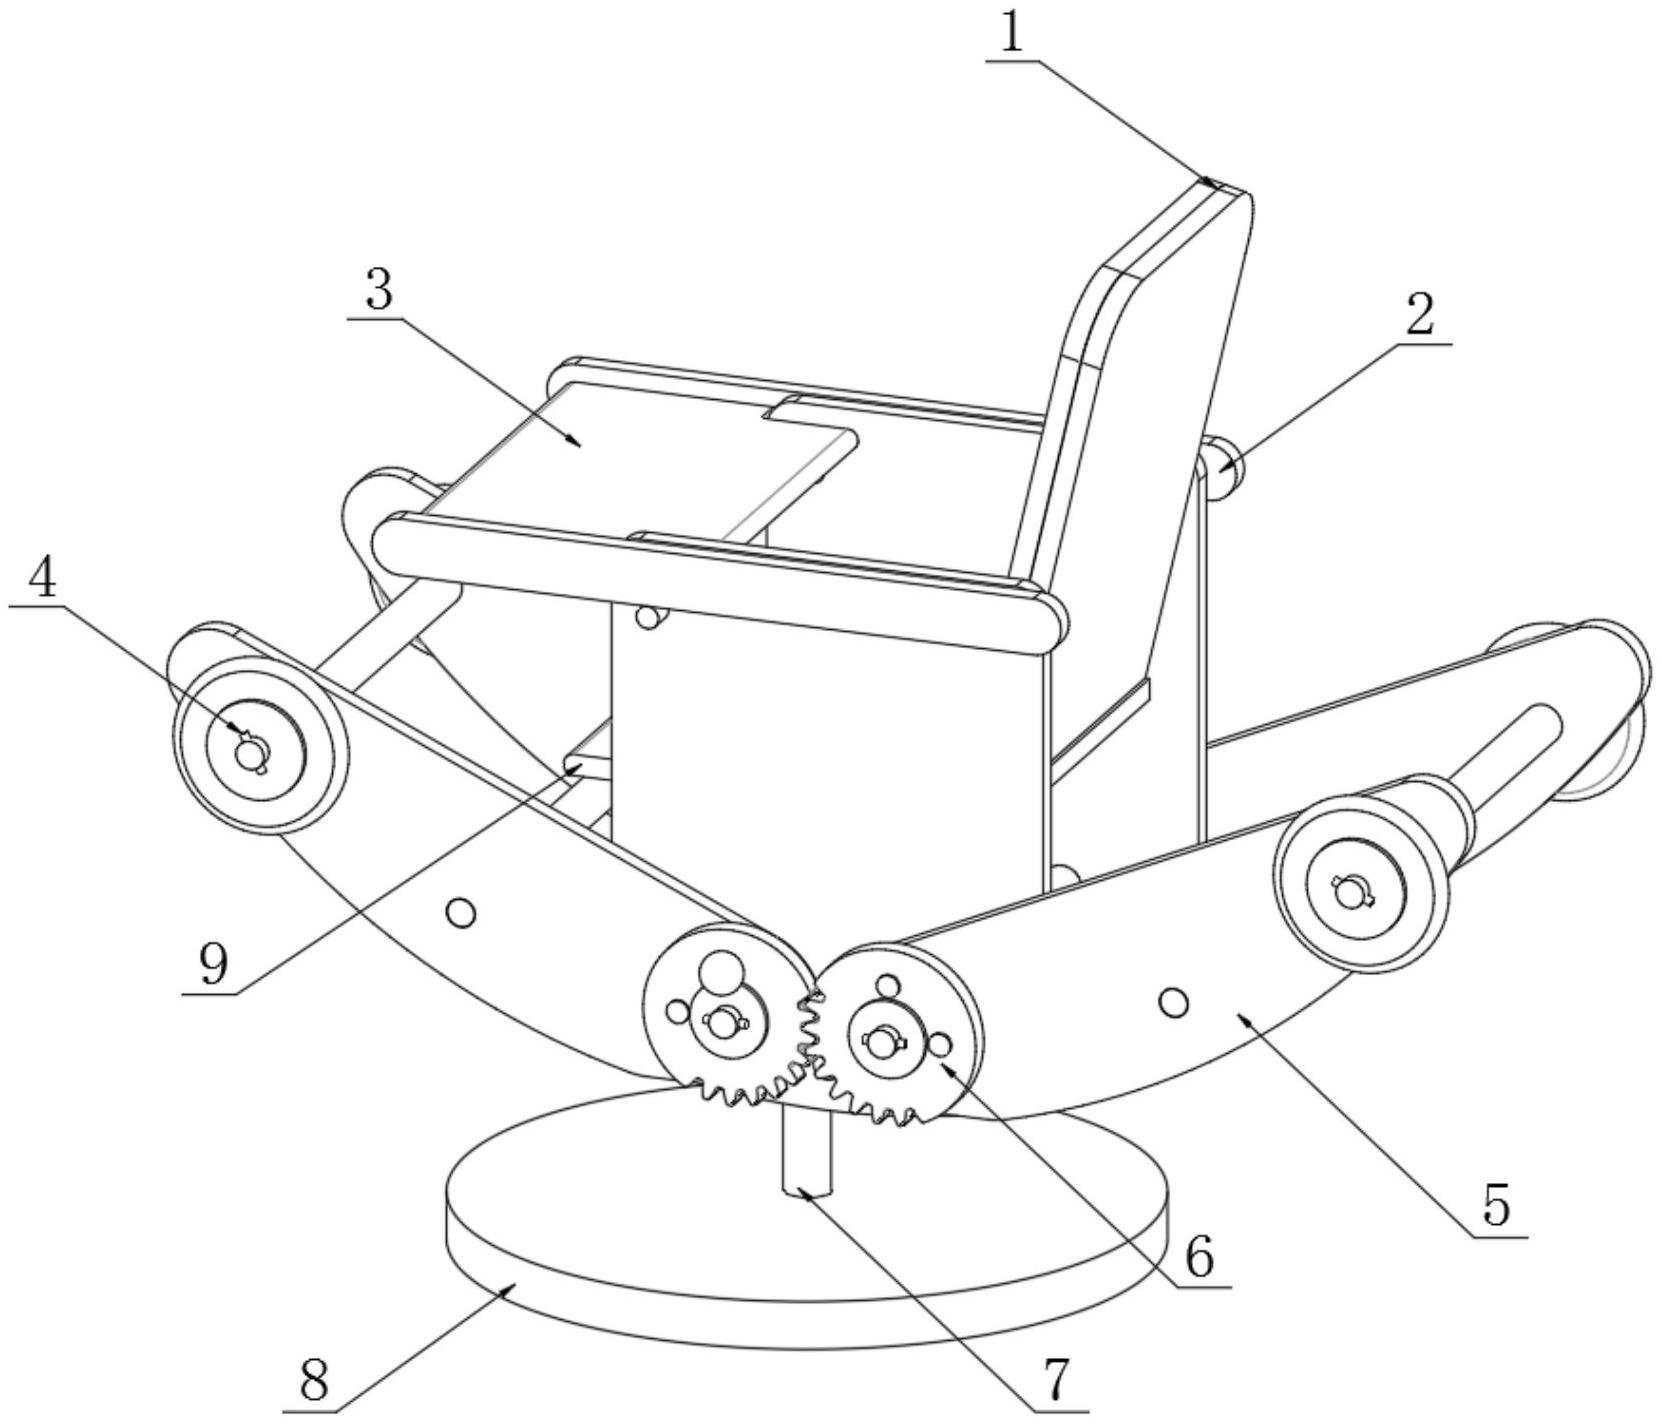 一种可以拼装的儿童木制玩具椅专利图